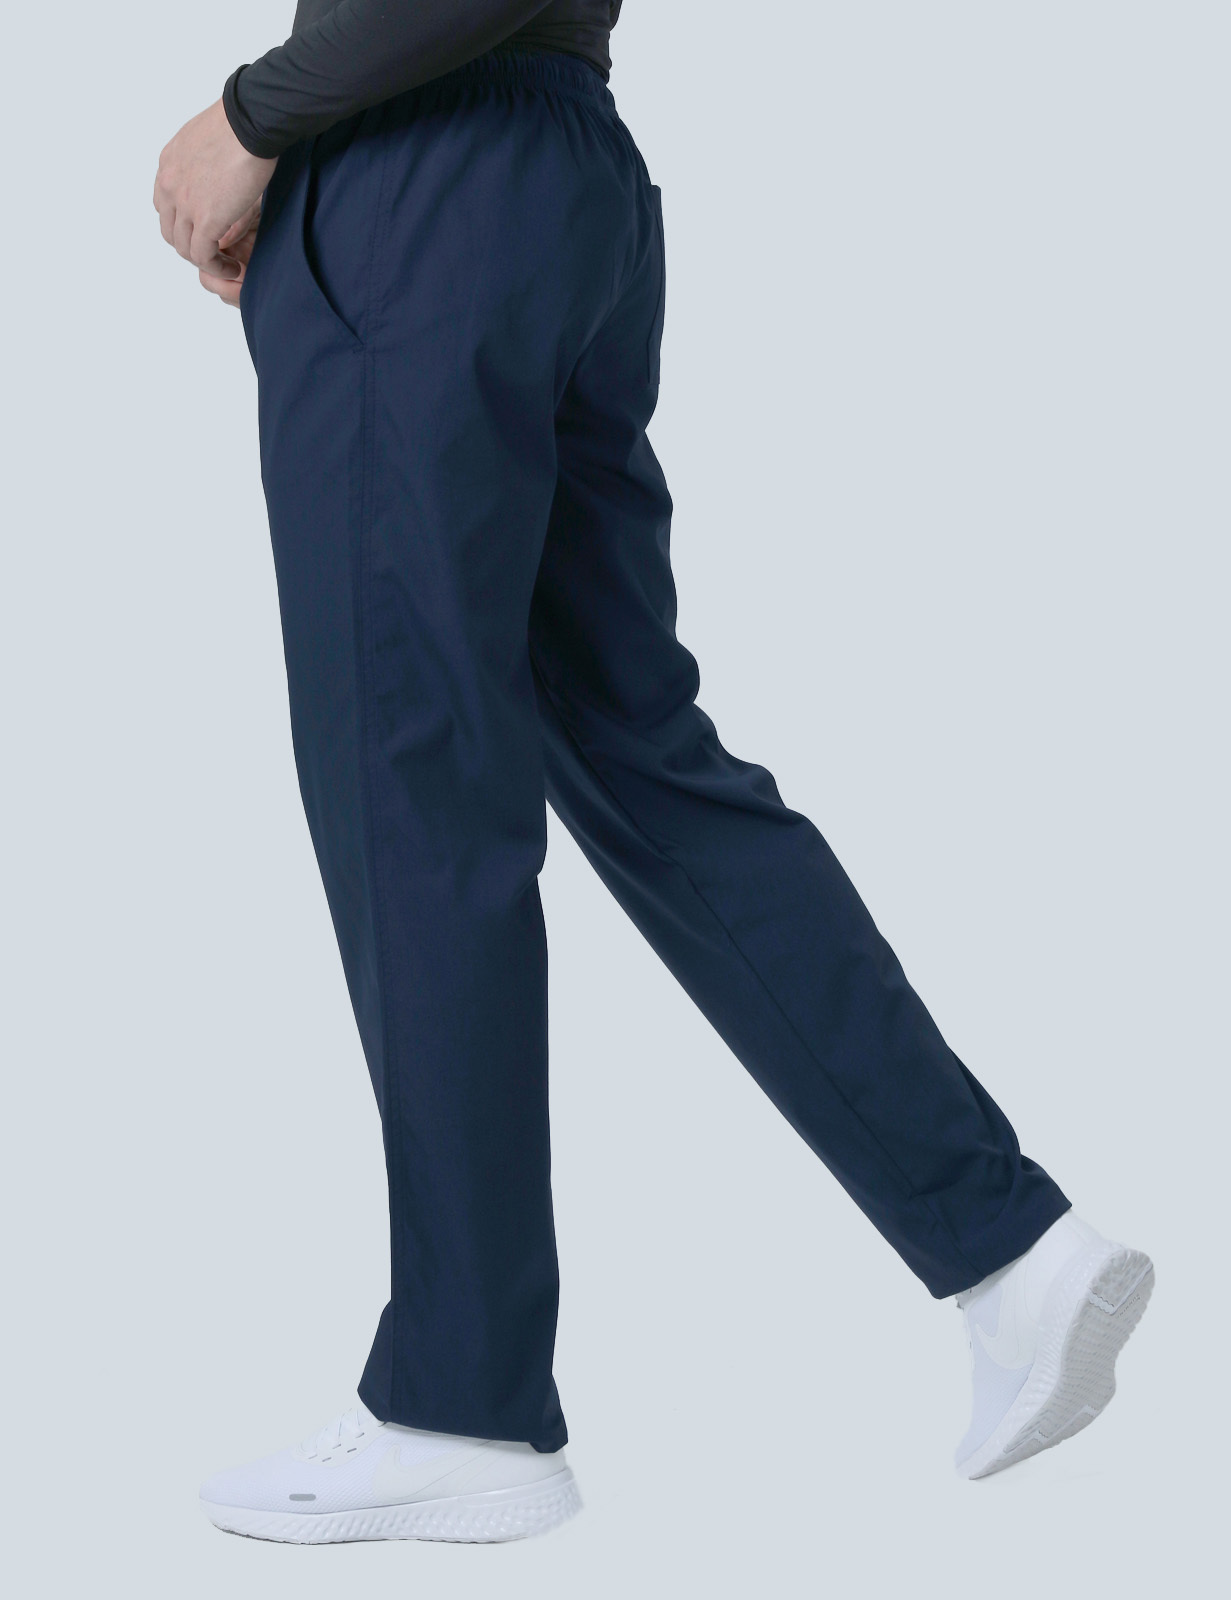 Men's Regular Cut Pants - Navy - Large - Tall - 2